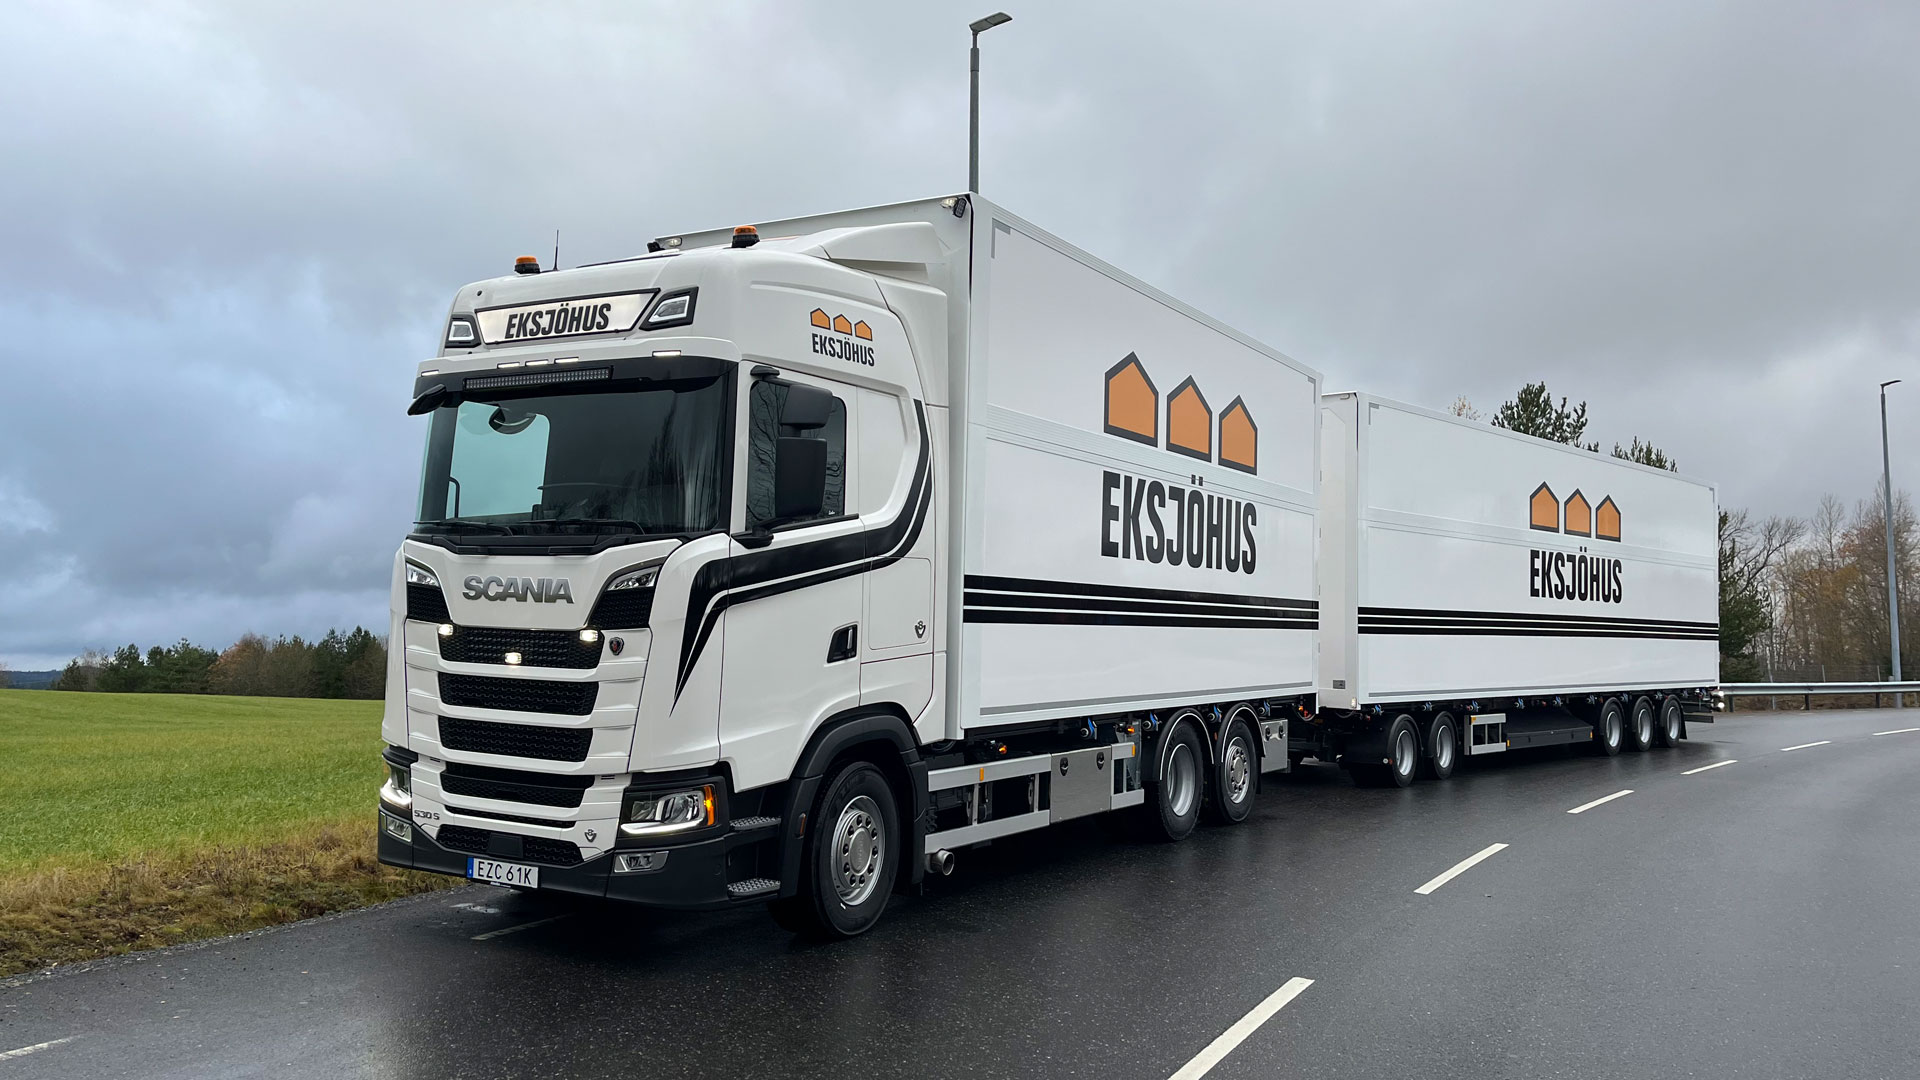 En Scanialastbil (S530) är levererad av Atteviks Lastbilar i Nässjö till kunden Eksjöhus AB.